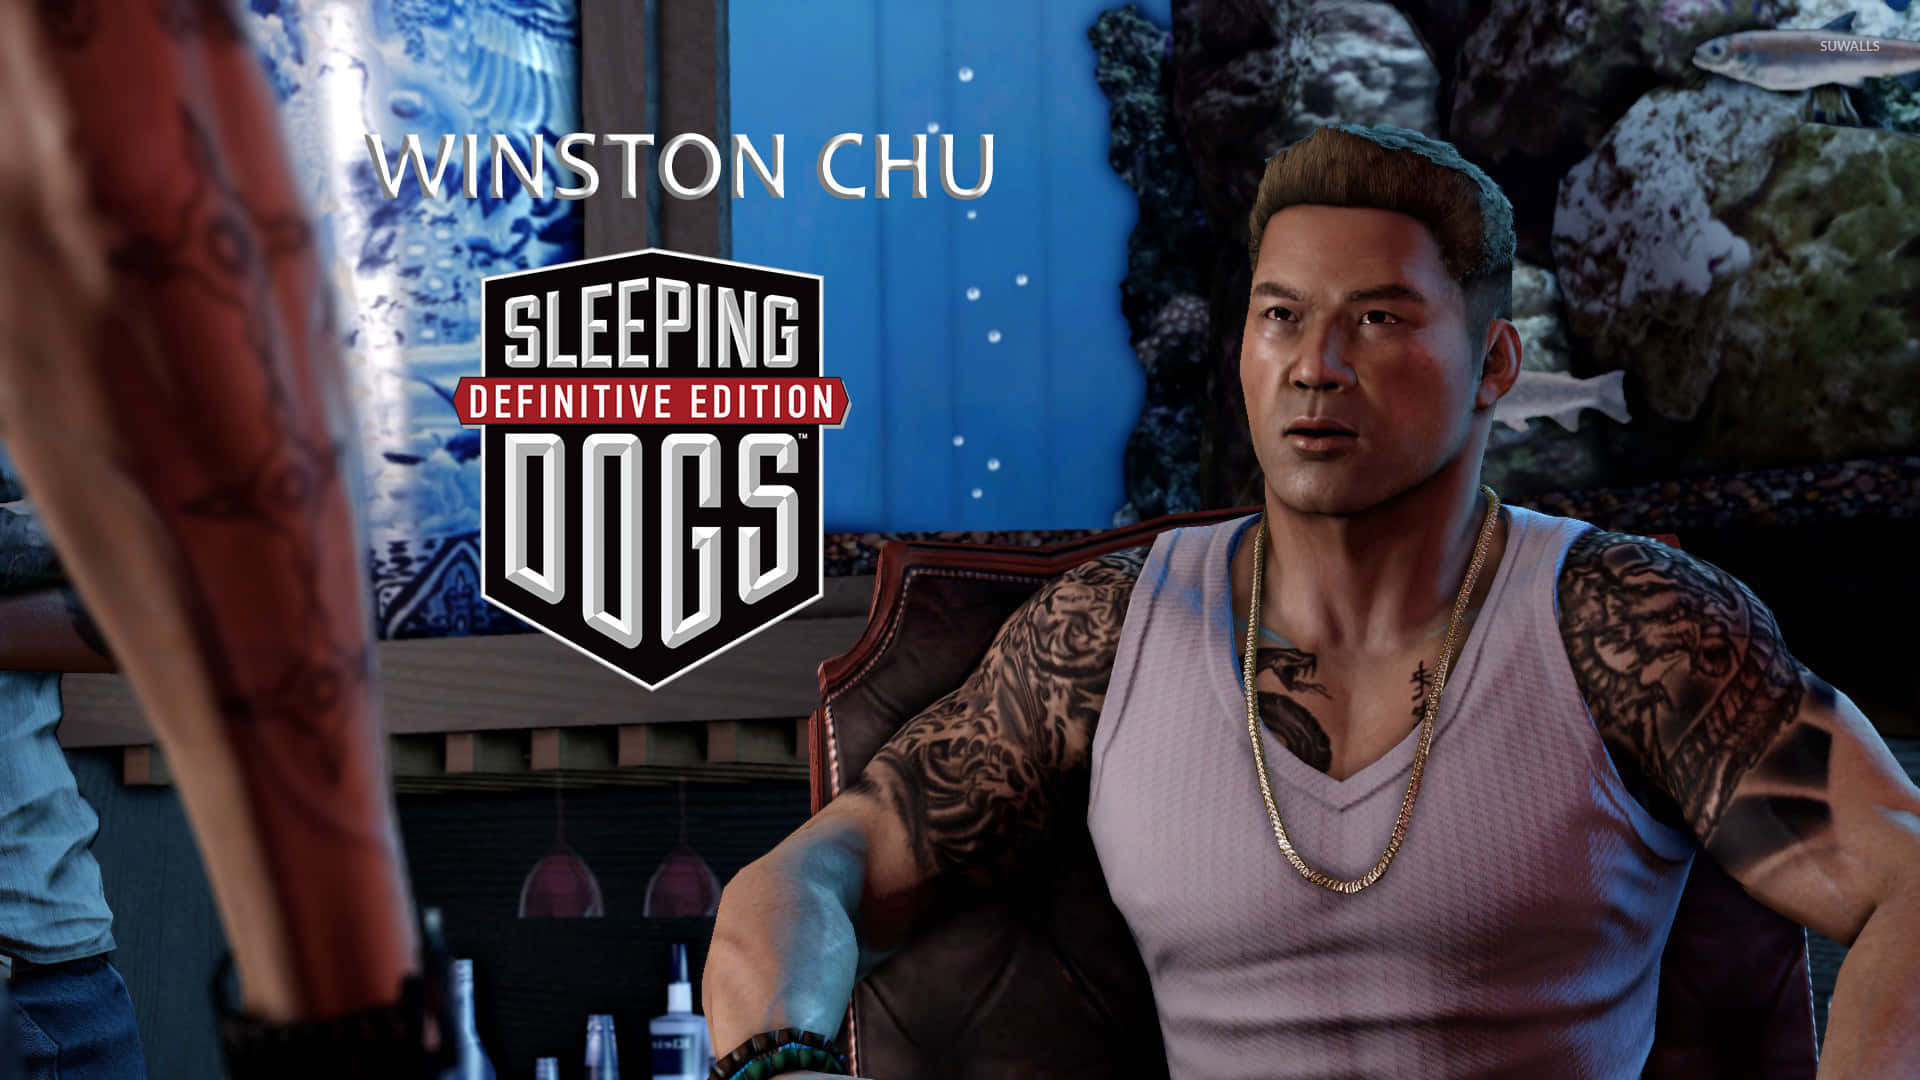 Bästabakgrundsbilden För Sleeping Dogs Är Winston Chu I Hans Kontor.